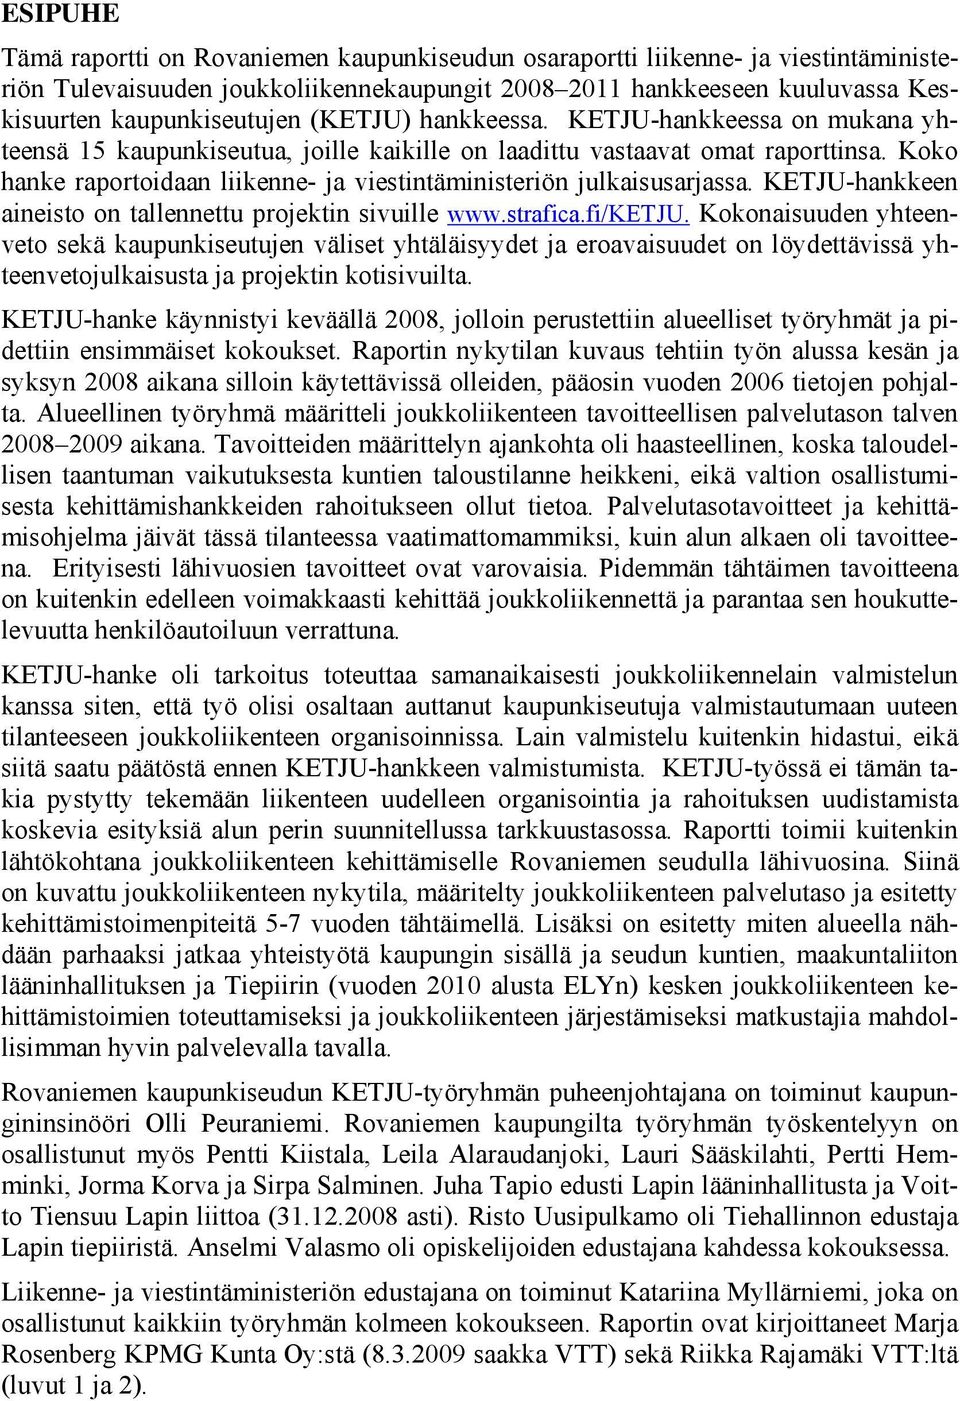 Koko hanke raportoidaan liikenne- ja viestintäministeriön julkaisusarjassa. KETJU-hankkeen aineisto on tallennettu projektin sivuille www.strafica.fi/ketju.